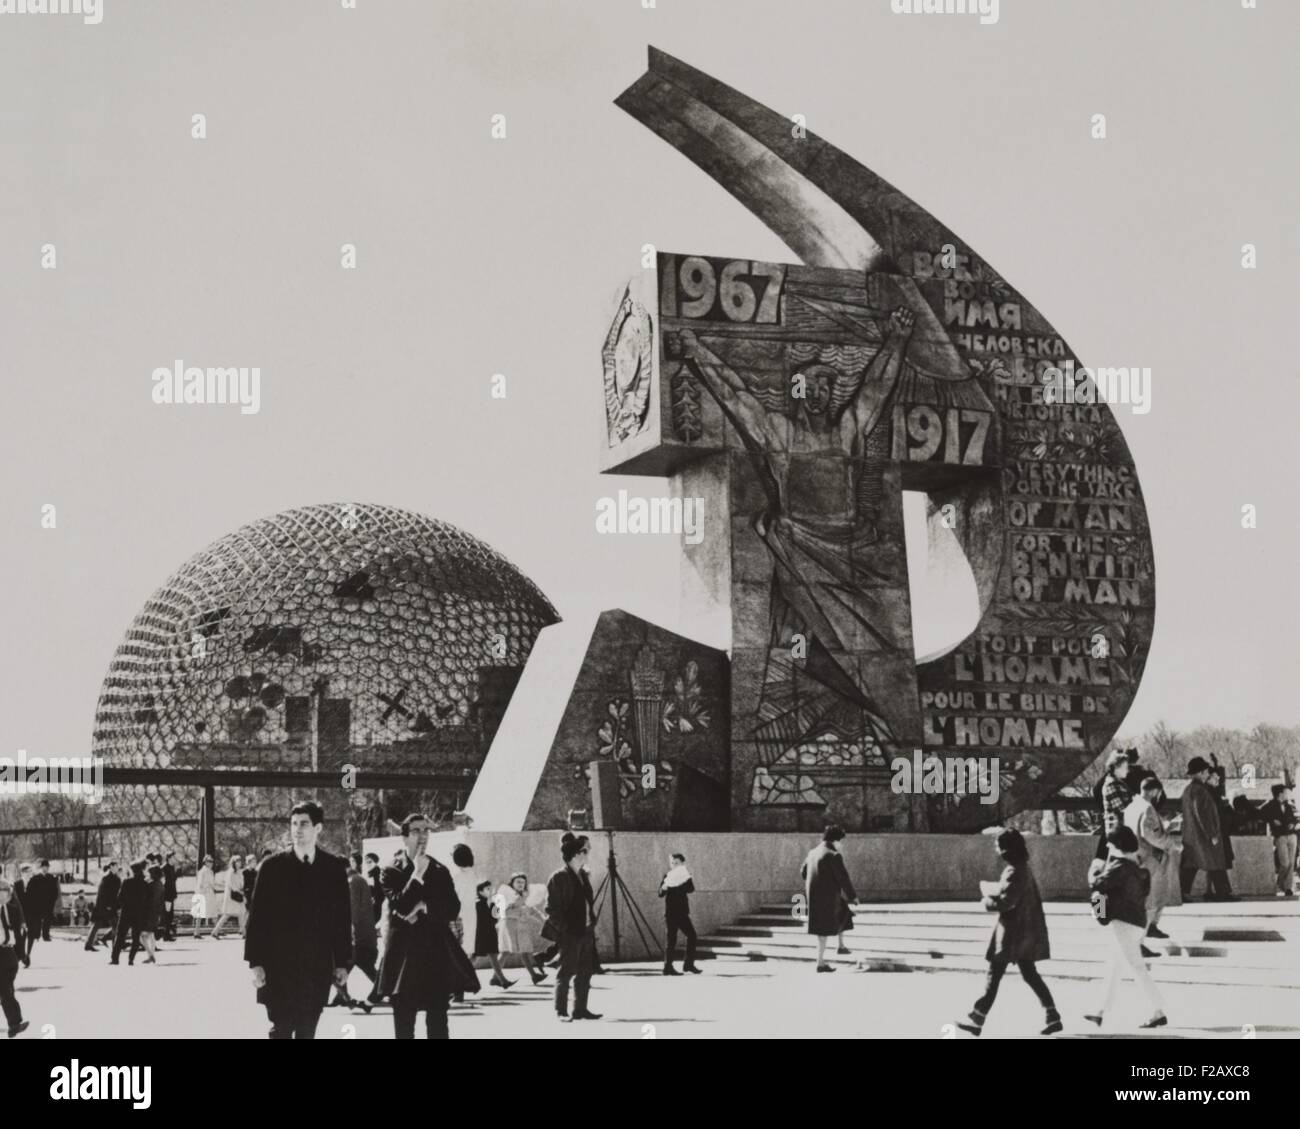 Sowjetische und US-Exponate auf der Montreal World Fair, 2. Mai 1967. Der sowjetischen Pavillon ist ein unverwechselbares Hammer und Sichel Denkmal mit ausdrucksvollen Kunstwerk und dem Slogan: "Alles zum Wohle der Menschen, zum Wohle der Menschen". Die Termine von 1917 und 1967 sind prominente, zum 50. Jahrestag der Oktoberrevolution. Auf der linken Seite ist der US-Pavillon, einem 20-stöckigen geodätische Kuppel von Buckminster Fuller. (BSLOC 2015 2 267) Stockfoto